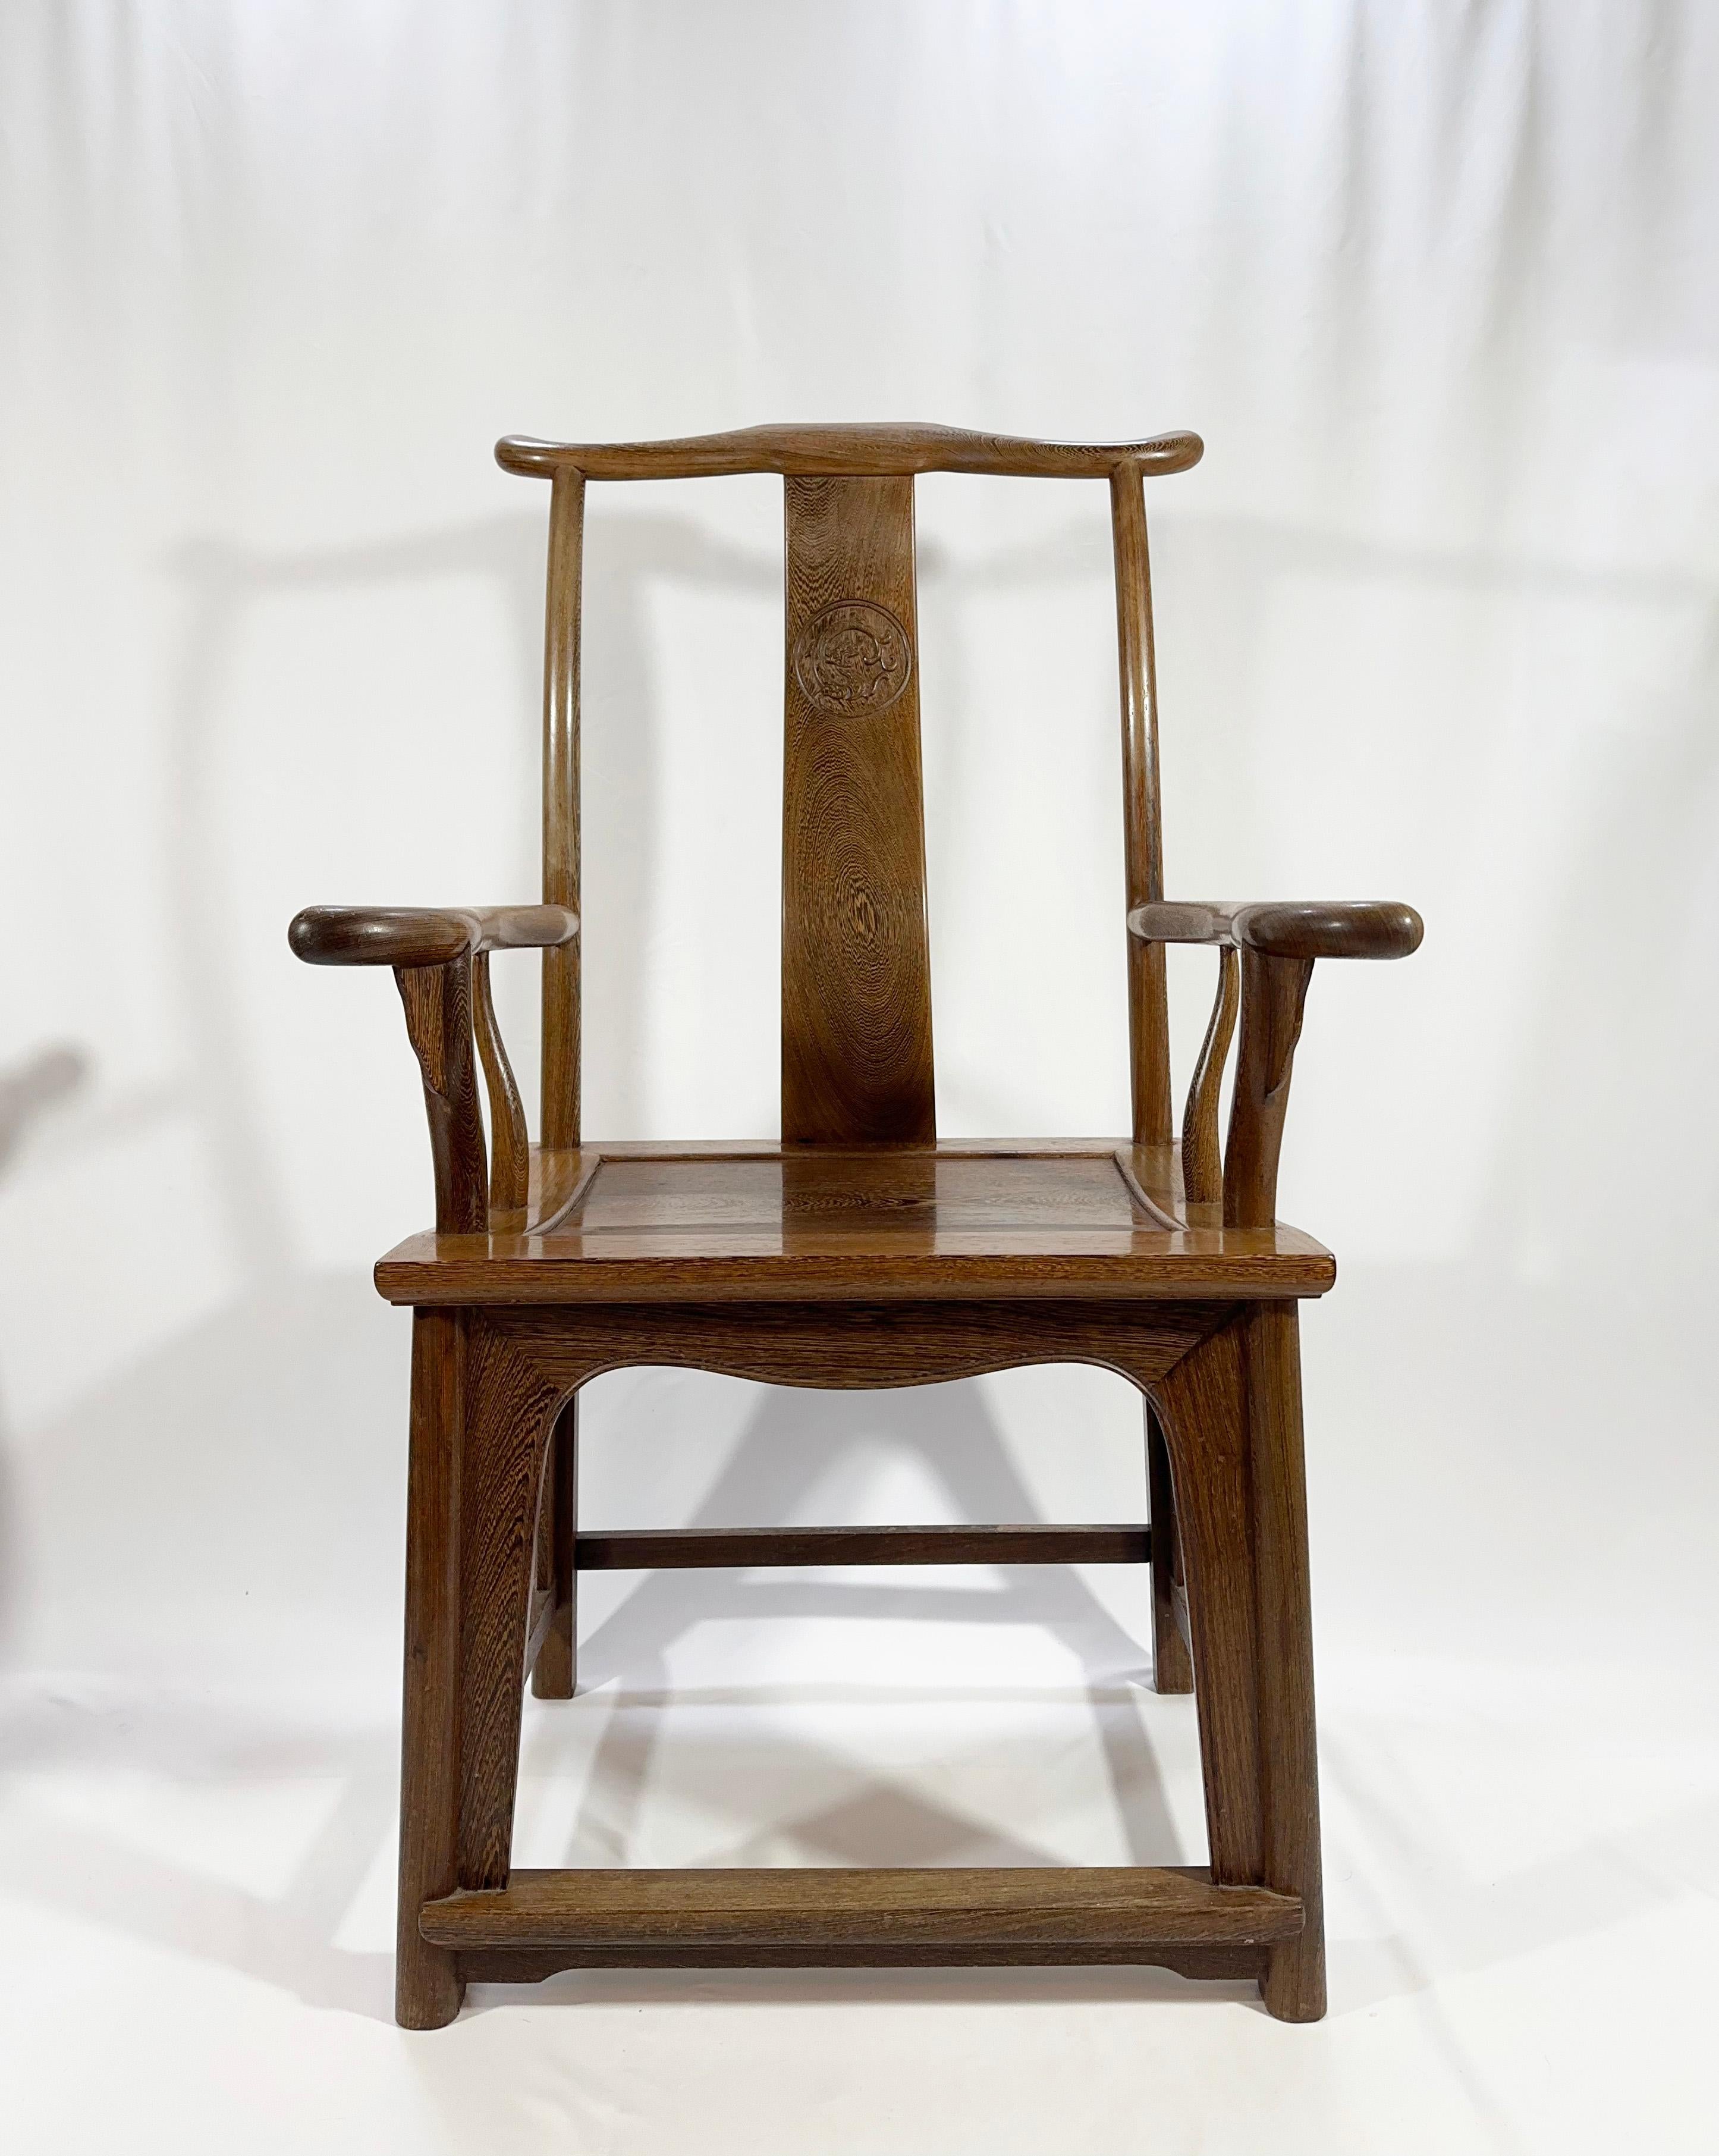 Erleben Sie die Eleganz der Geschichte mit diesem Paar chinesischer Stühle mit Jochlehne aus dem frühen 20. Jahrhundert, ein Zeugnis des königlichen Charmes der Handwerkskunst der Qing-Dynastie. Diese Stühle, die vollständig aus dem markant